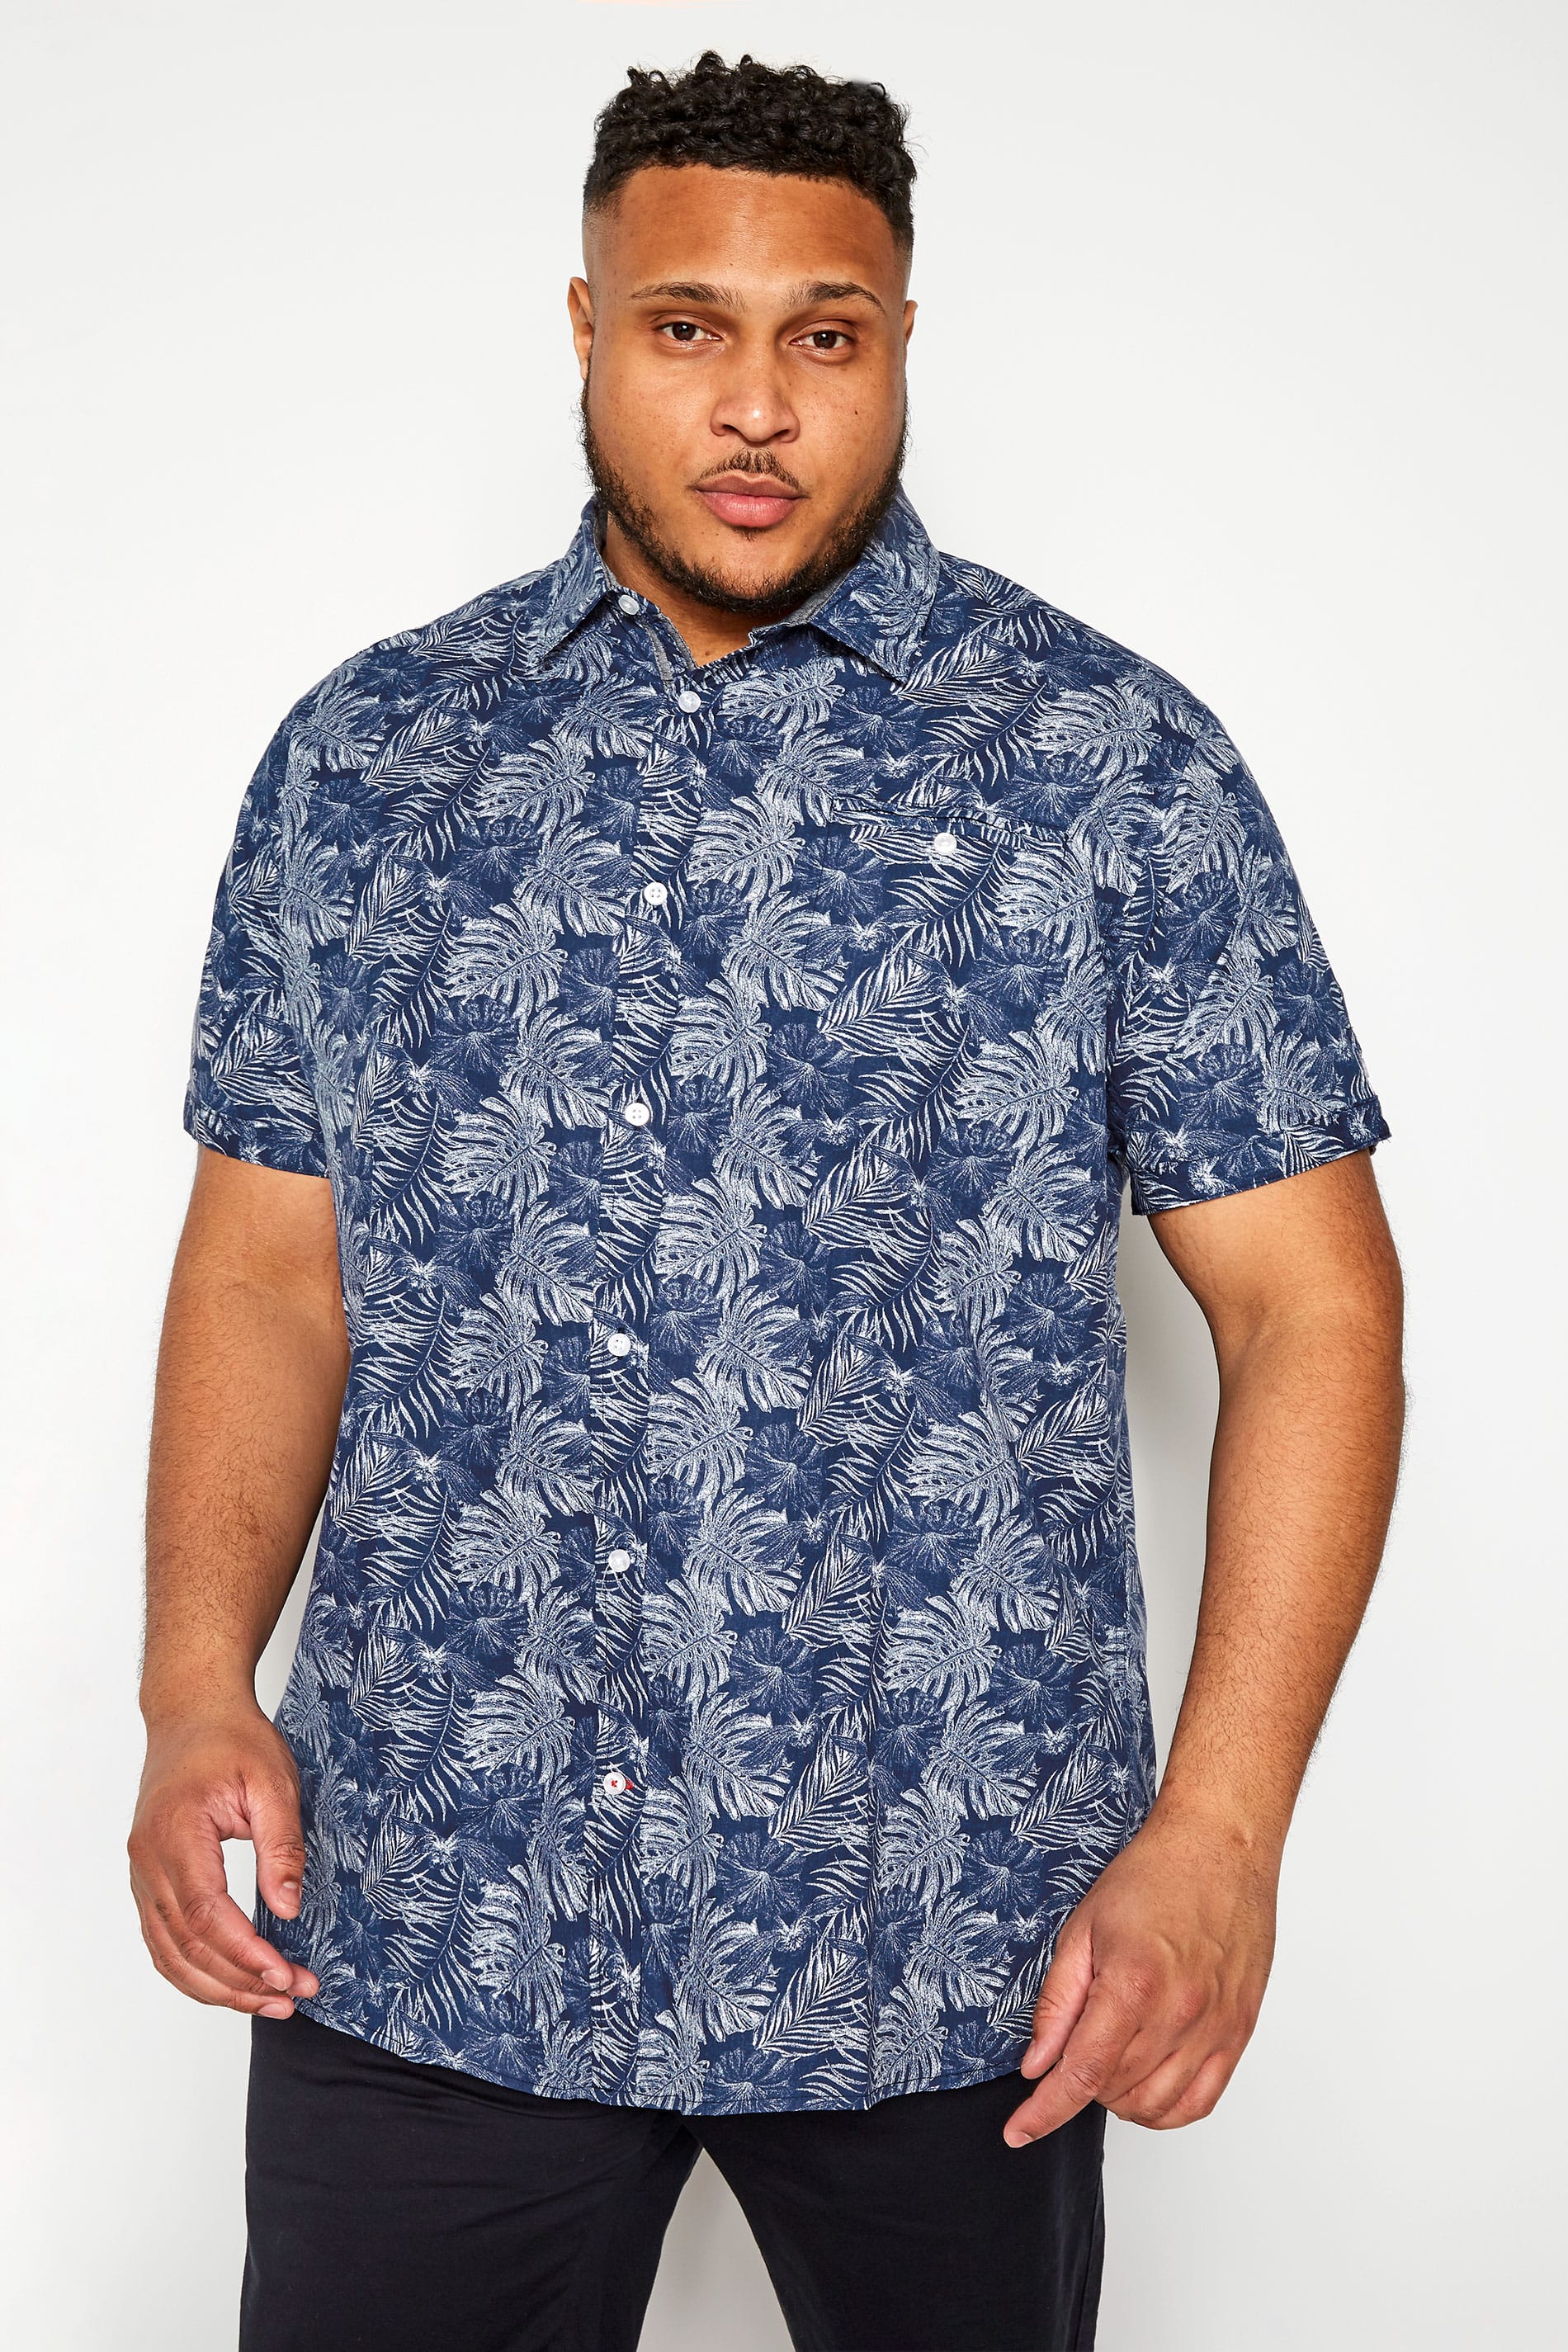 D555 Navy Hawaiian Leaf Print Shirt | BadRhino